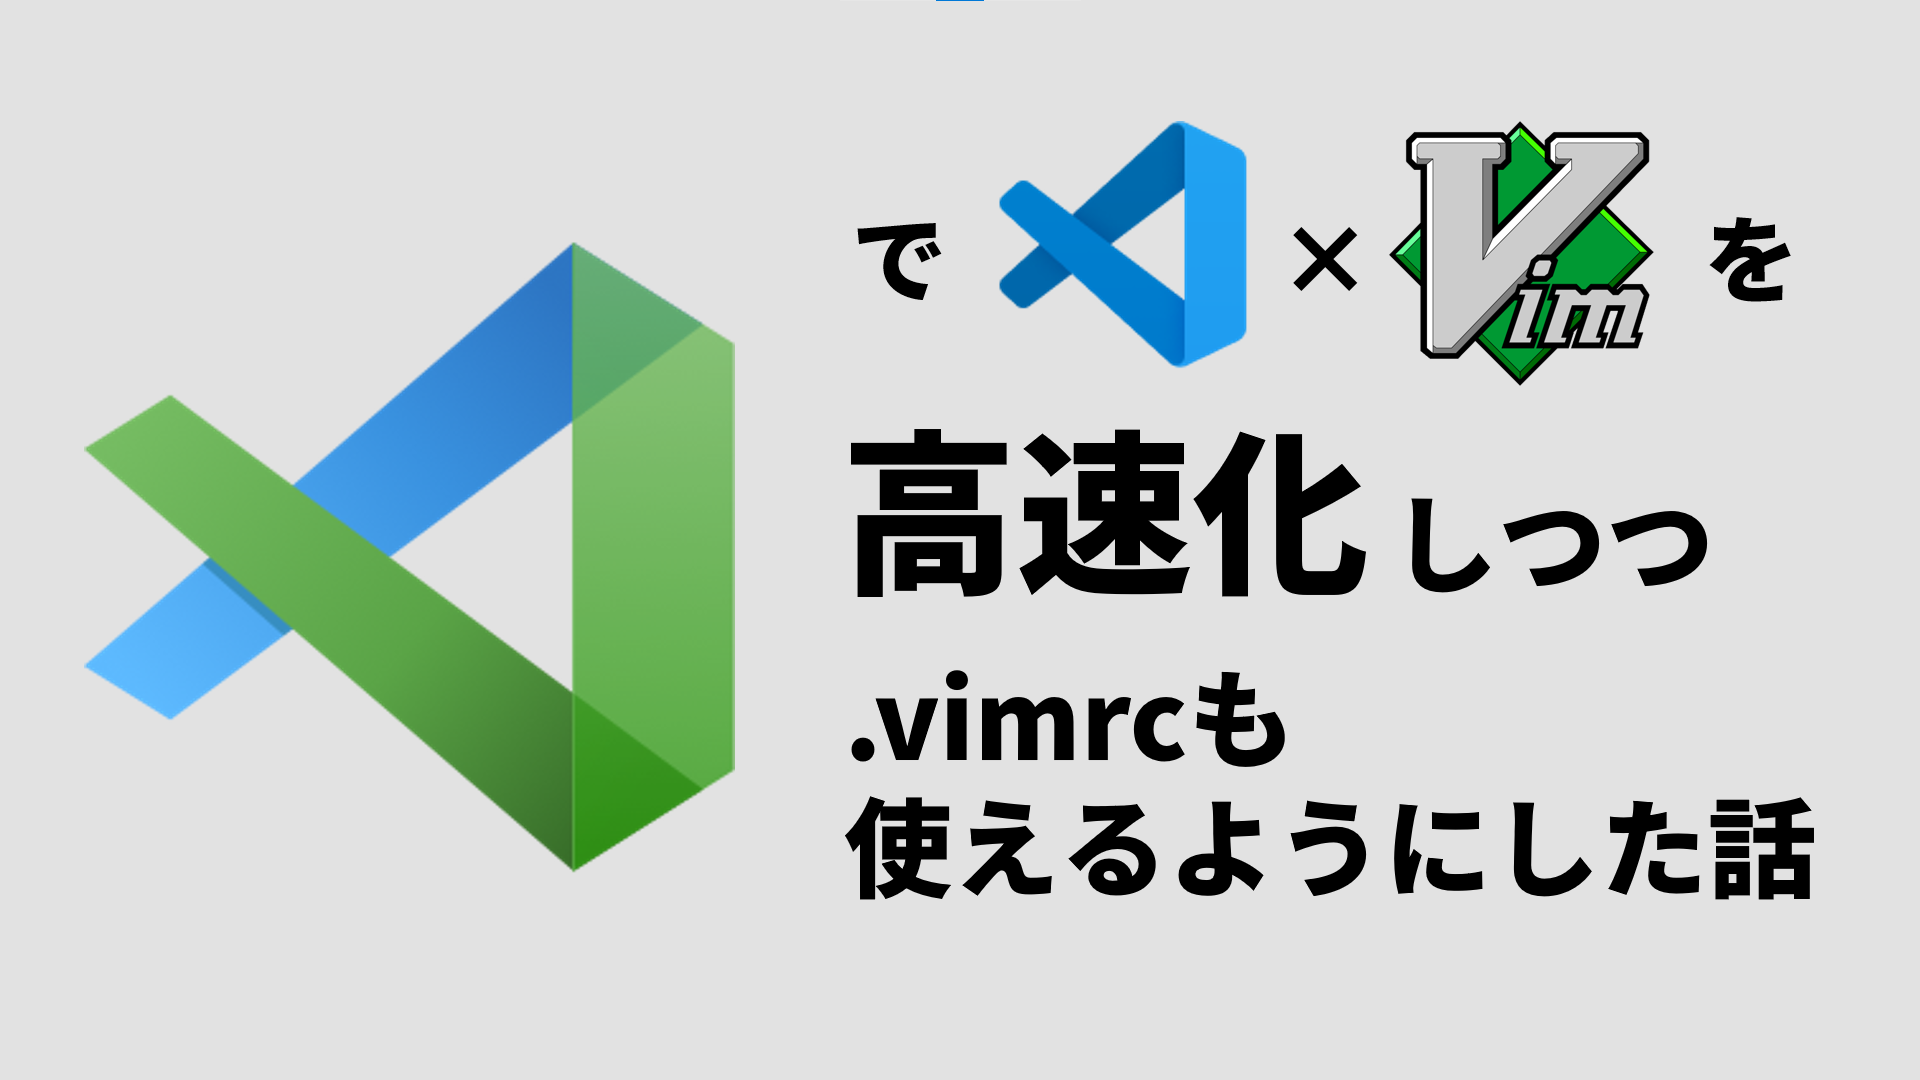 vscode-neovimでVSCodeのvim操作を高速化しつつ.vimrcも使えるようにした話